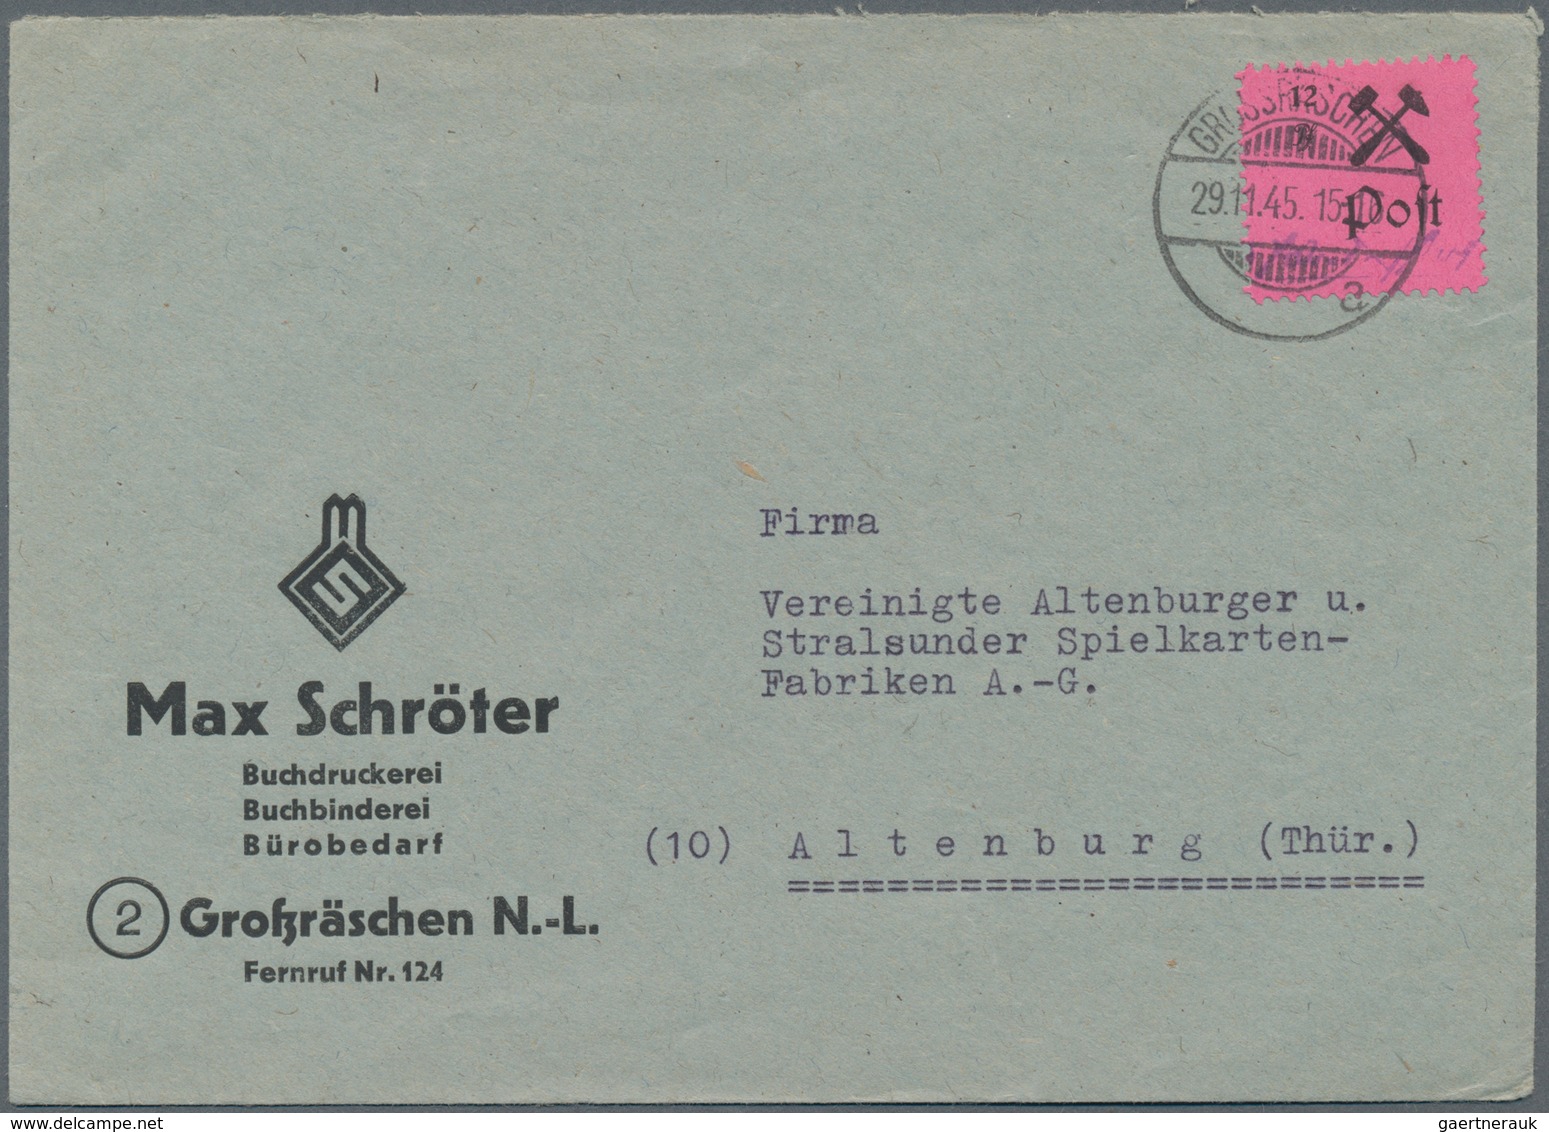 Deutsche Lokalausgaben ab 1945: GROSSRÄSCHEN: 1945/1946, Lot von 24 Briefen/Karten, soweit ersichtli